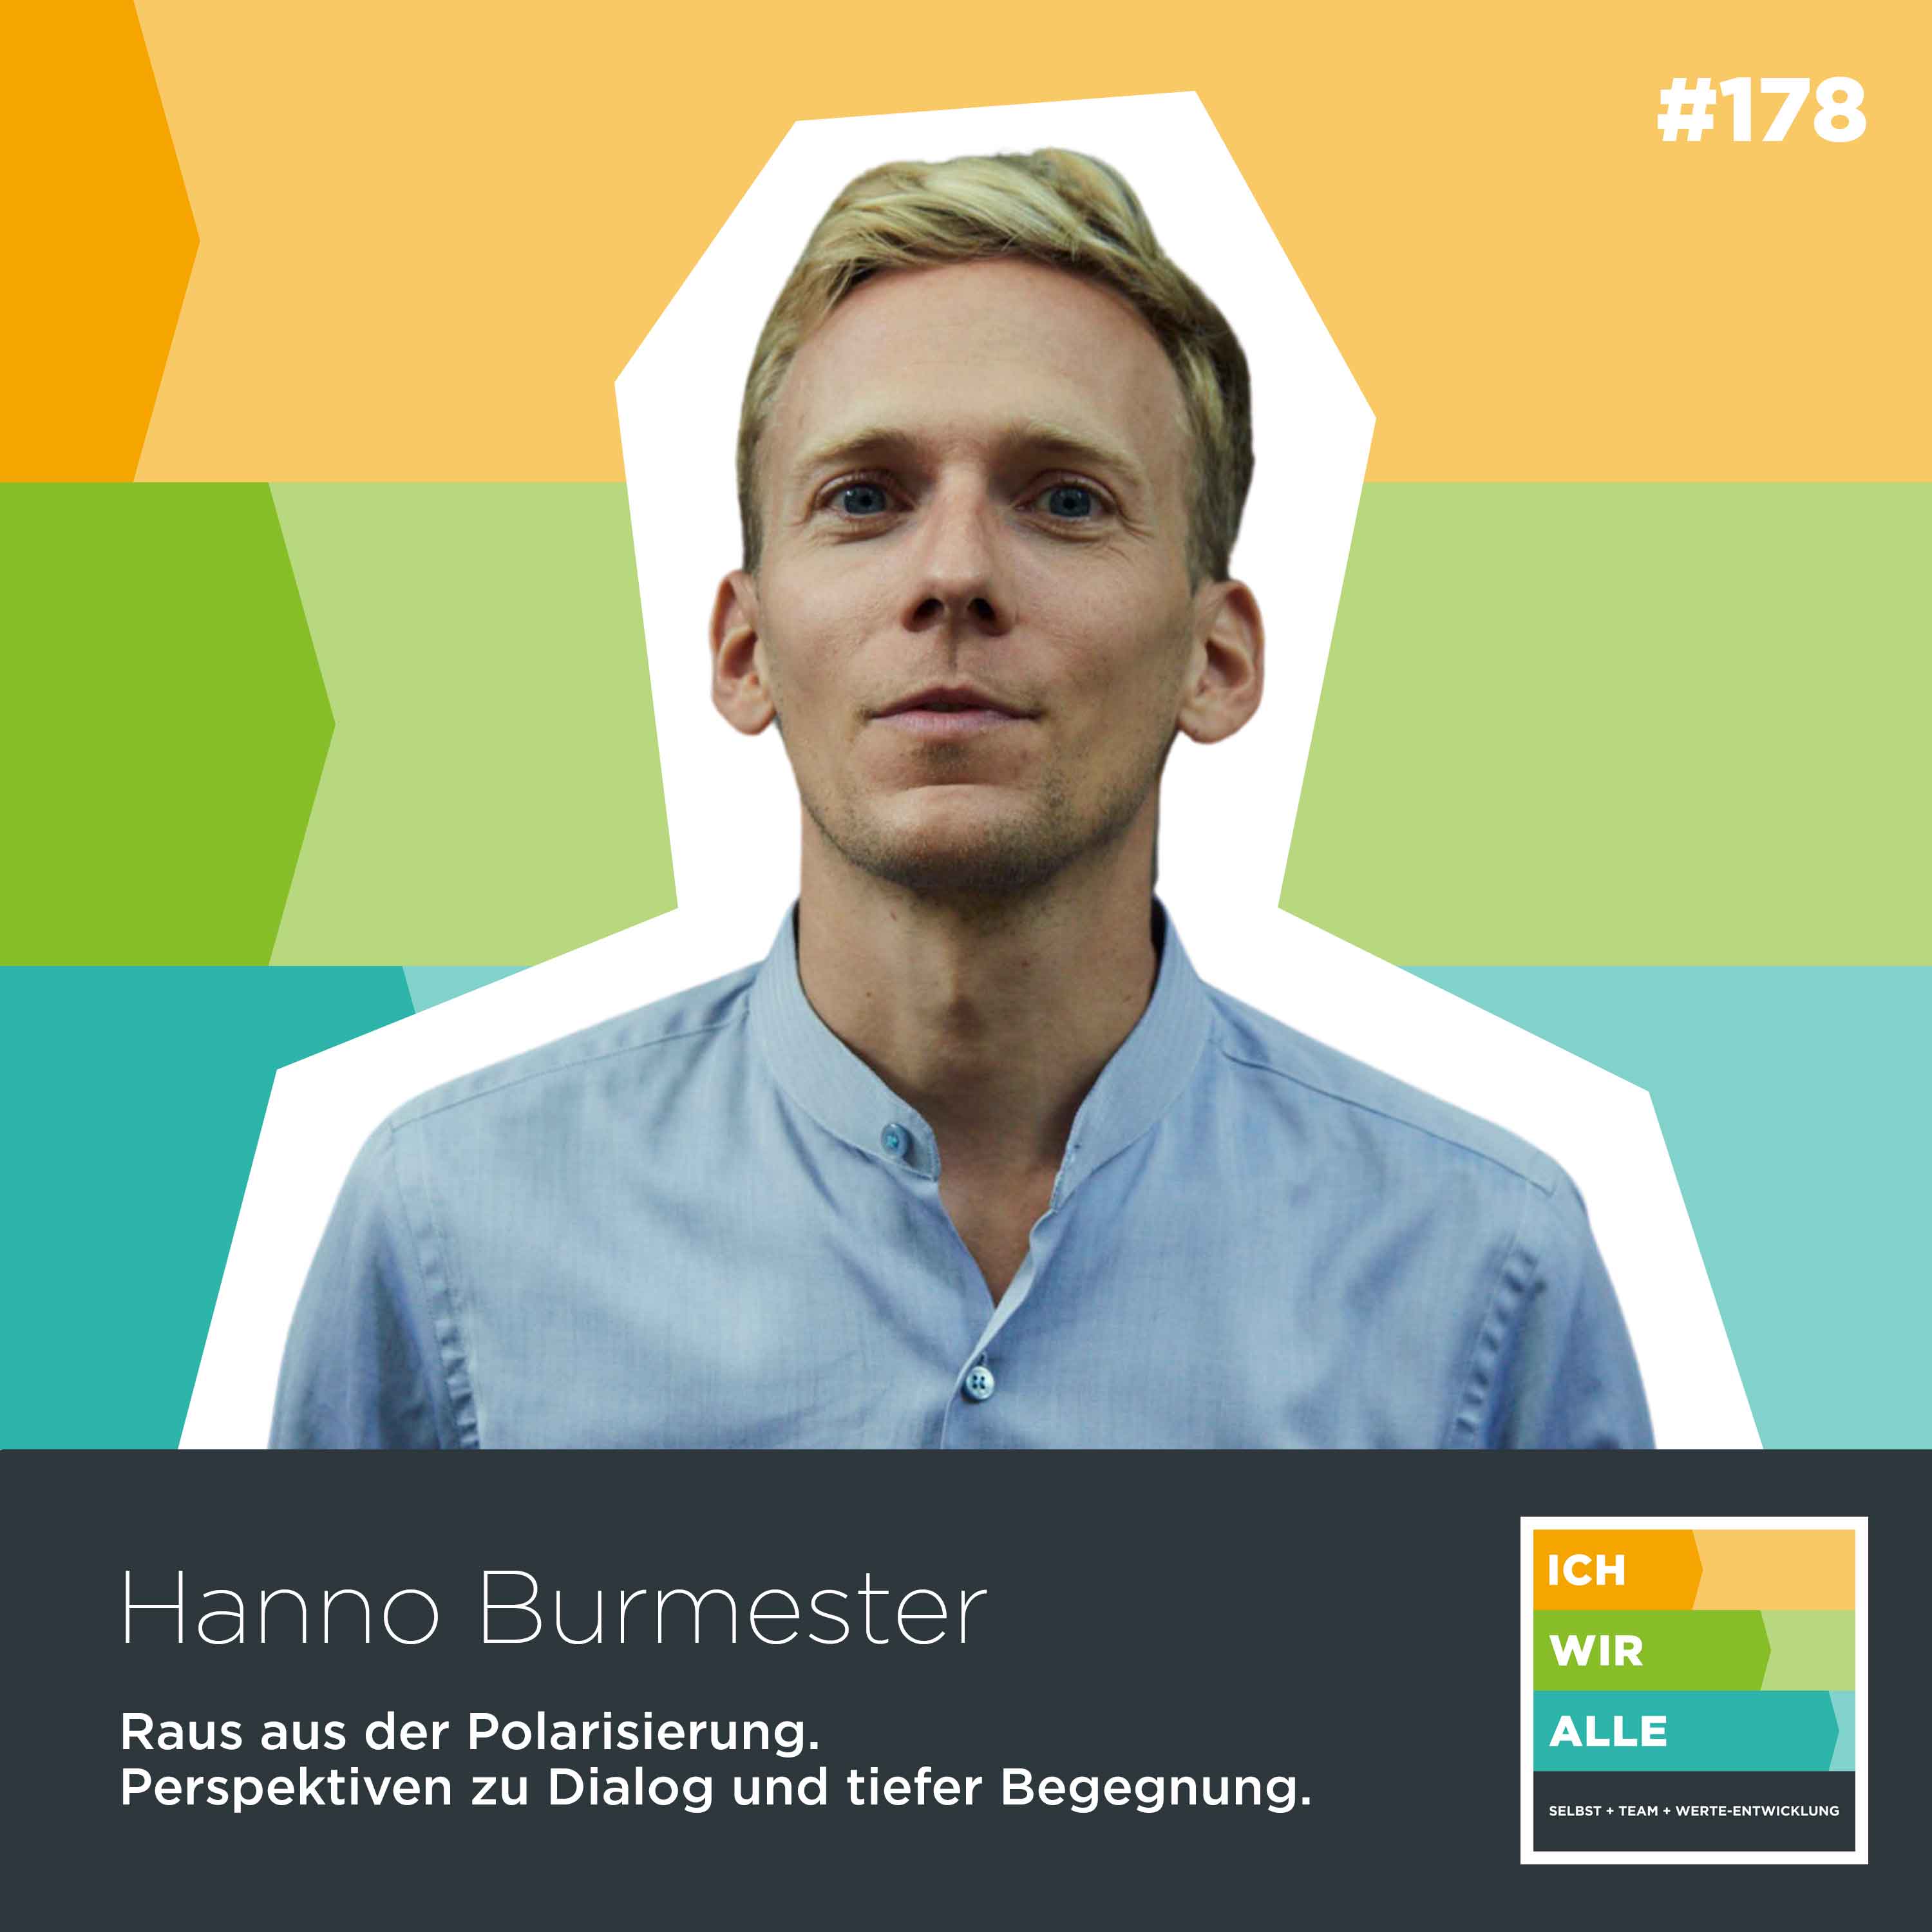 Hanno Burmester: Raus aus der Polarisierung. Perspektiven zu Dialog und tiefer Begegnung